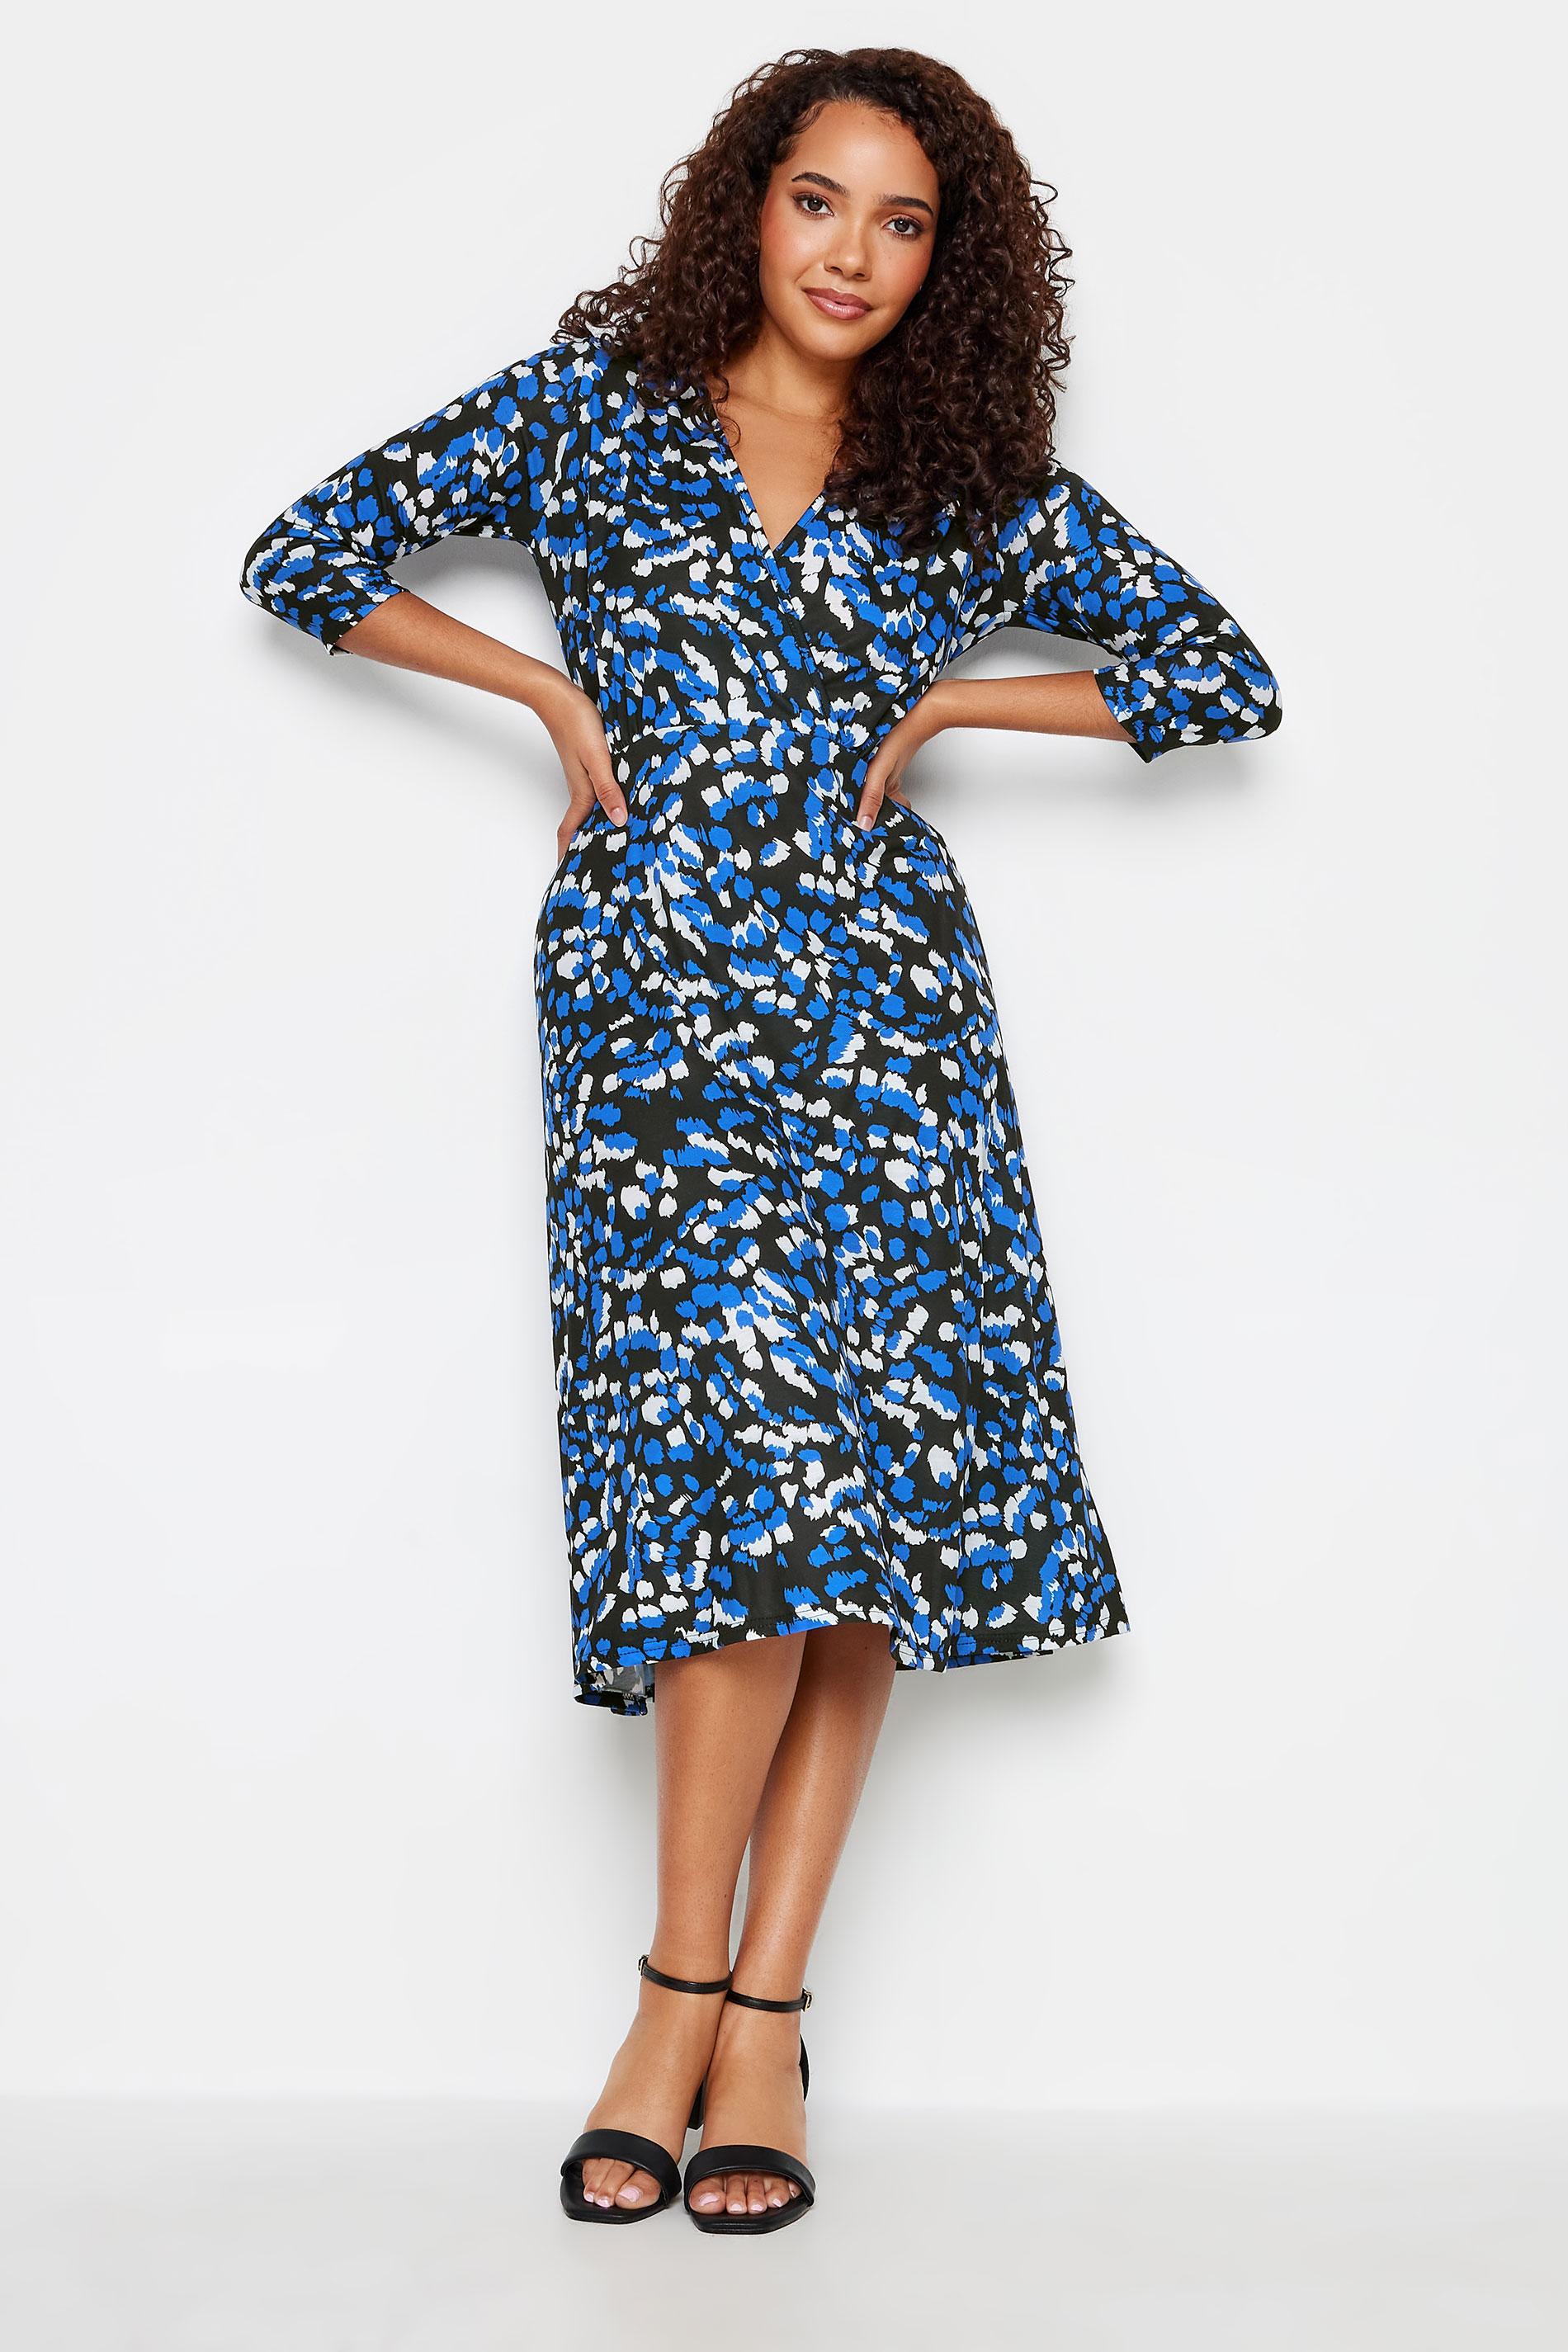 M&Co Blue Animal Print Wrap Dress | M&Co